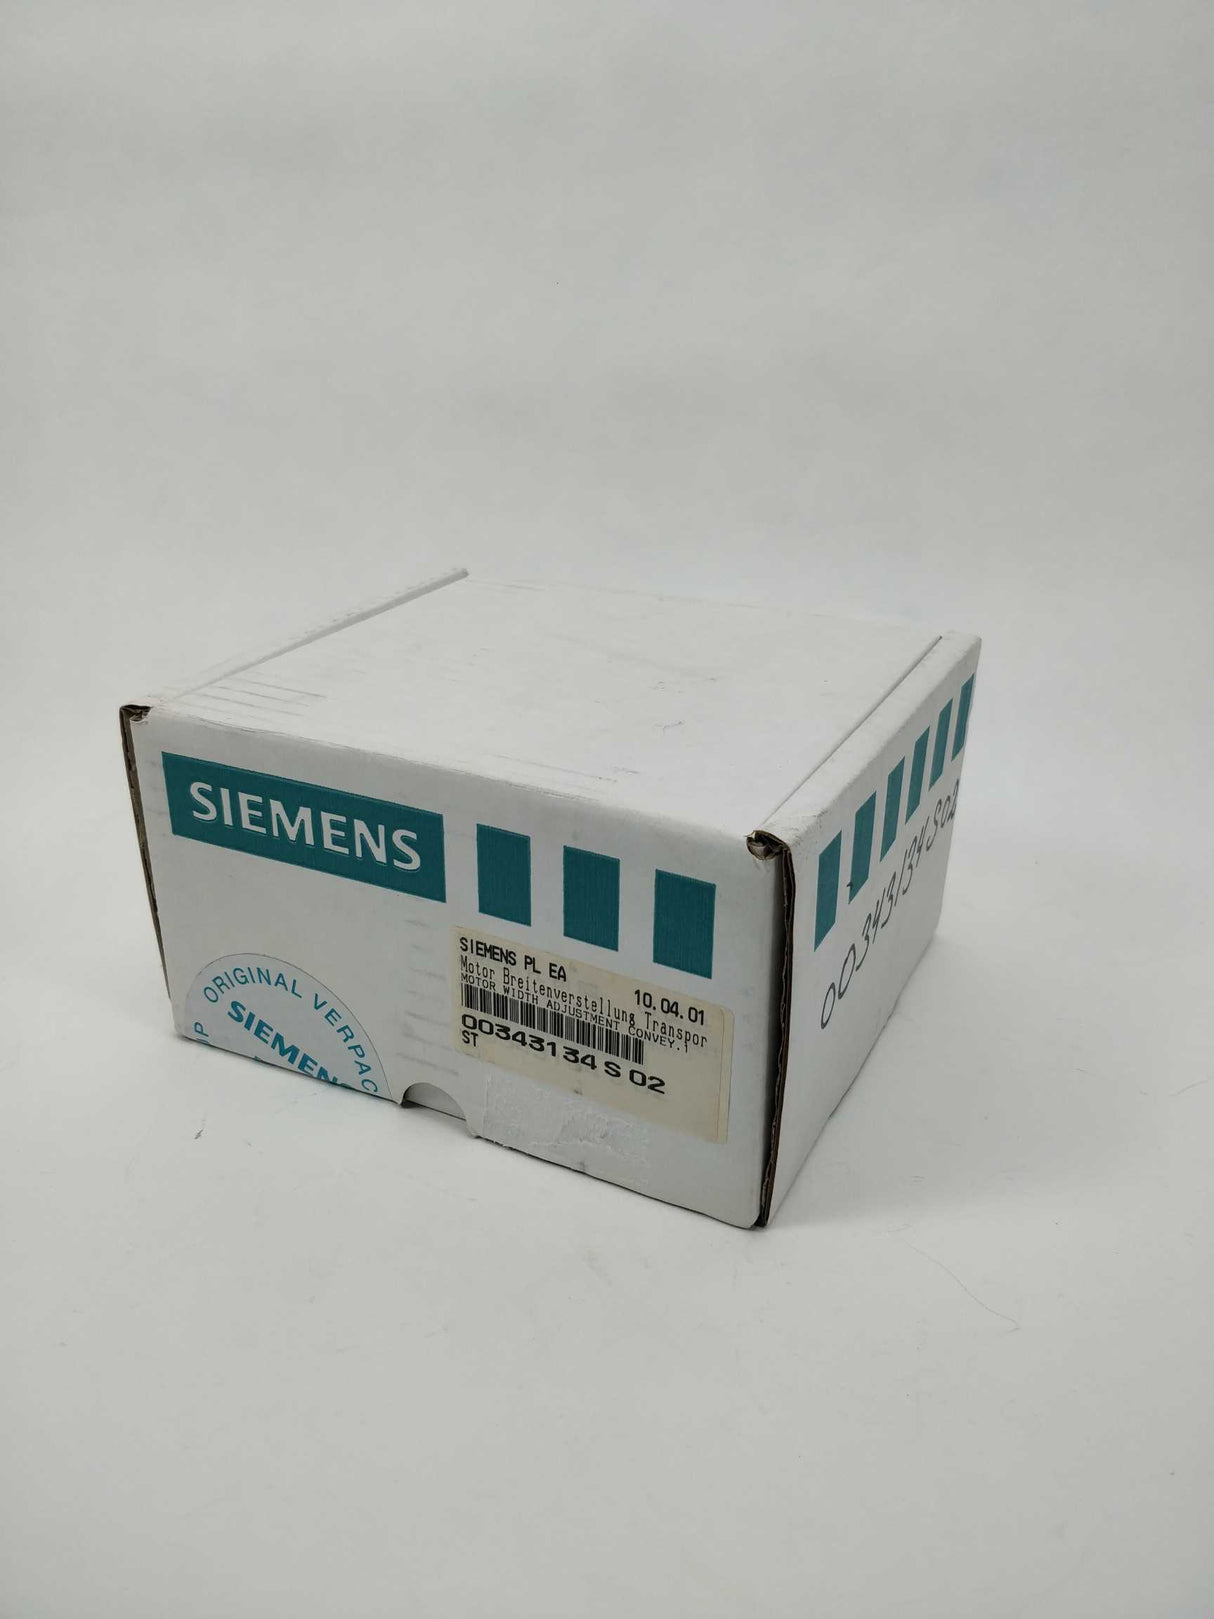 Siemens 00343134S02 / 00343134-02 Motor Width Adjustment Convey.